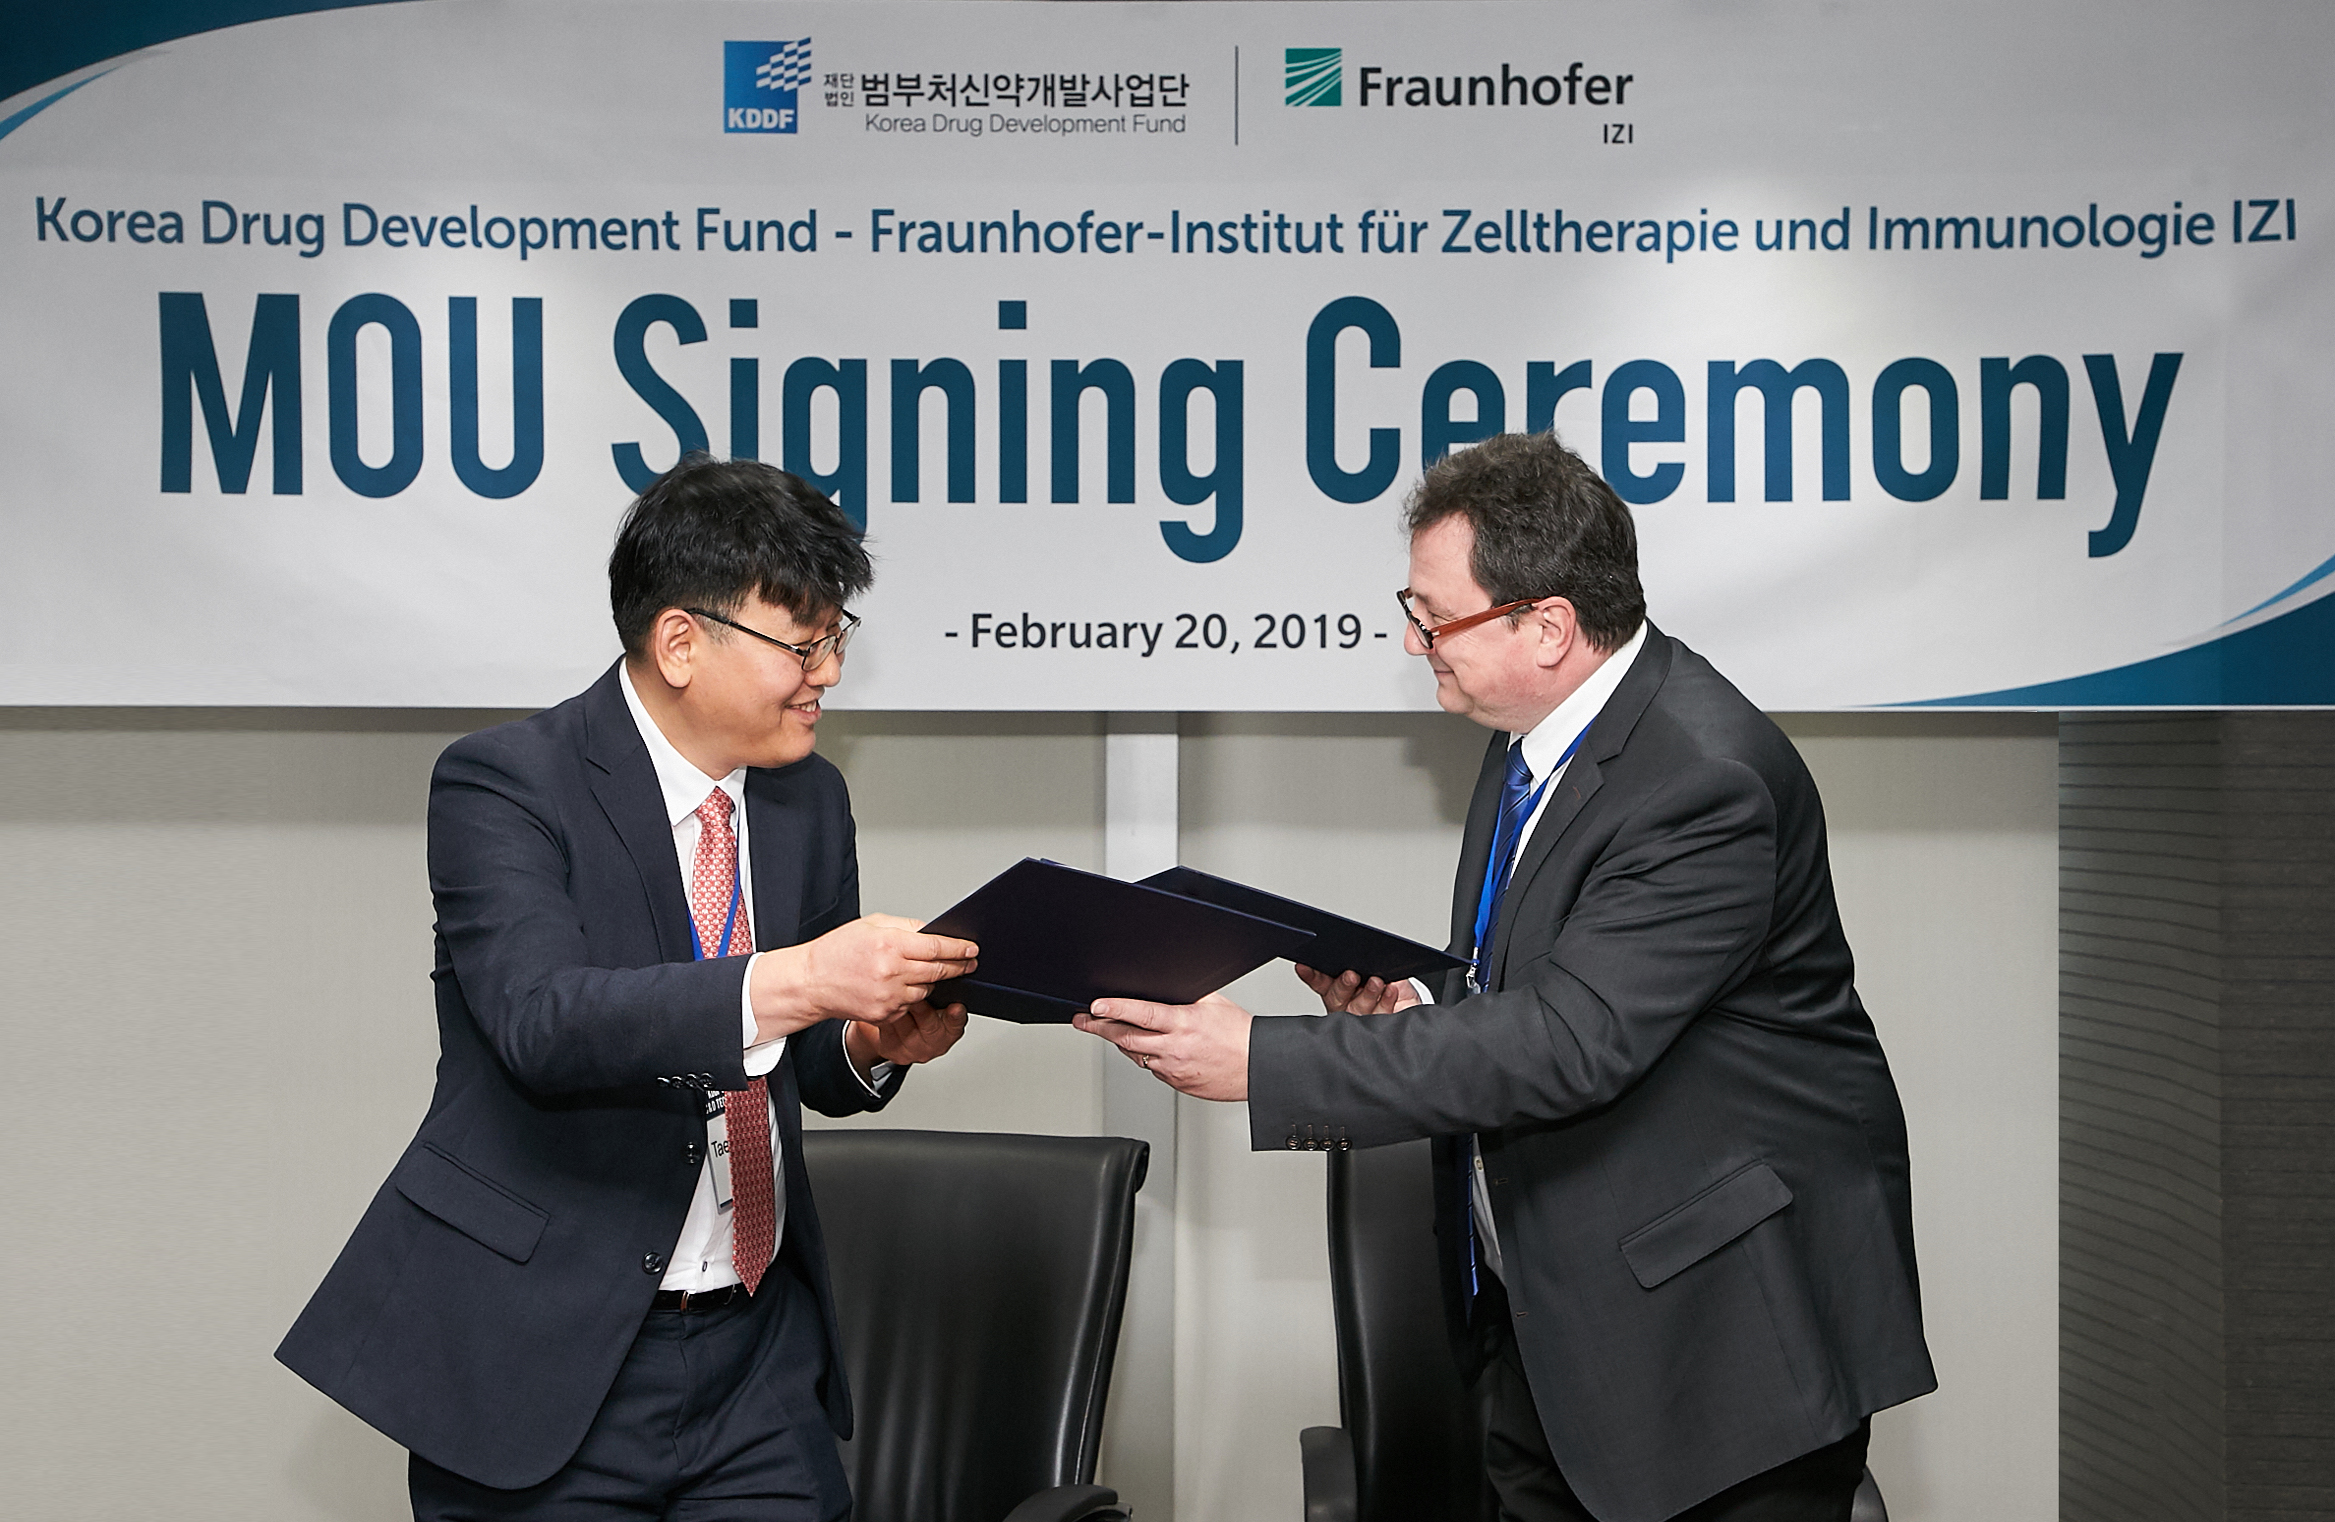 Unterzeichnung des Memorandum of Understanding durch Taeerk Kim (CBO KDDF) und Dr. Thomas Tradler (Fraunhofer IZI)